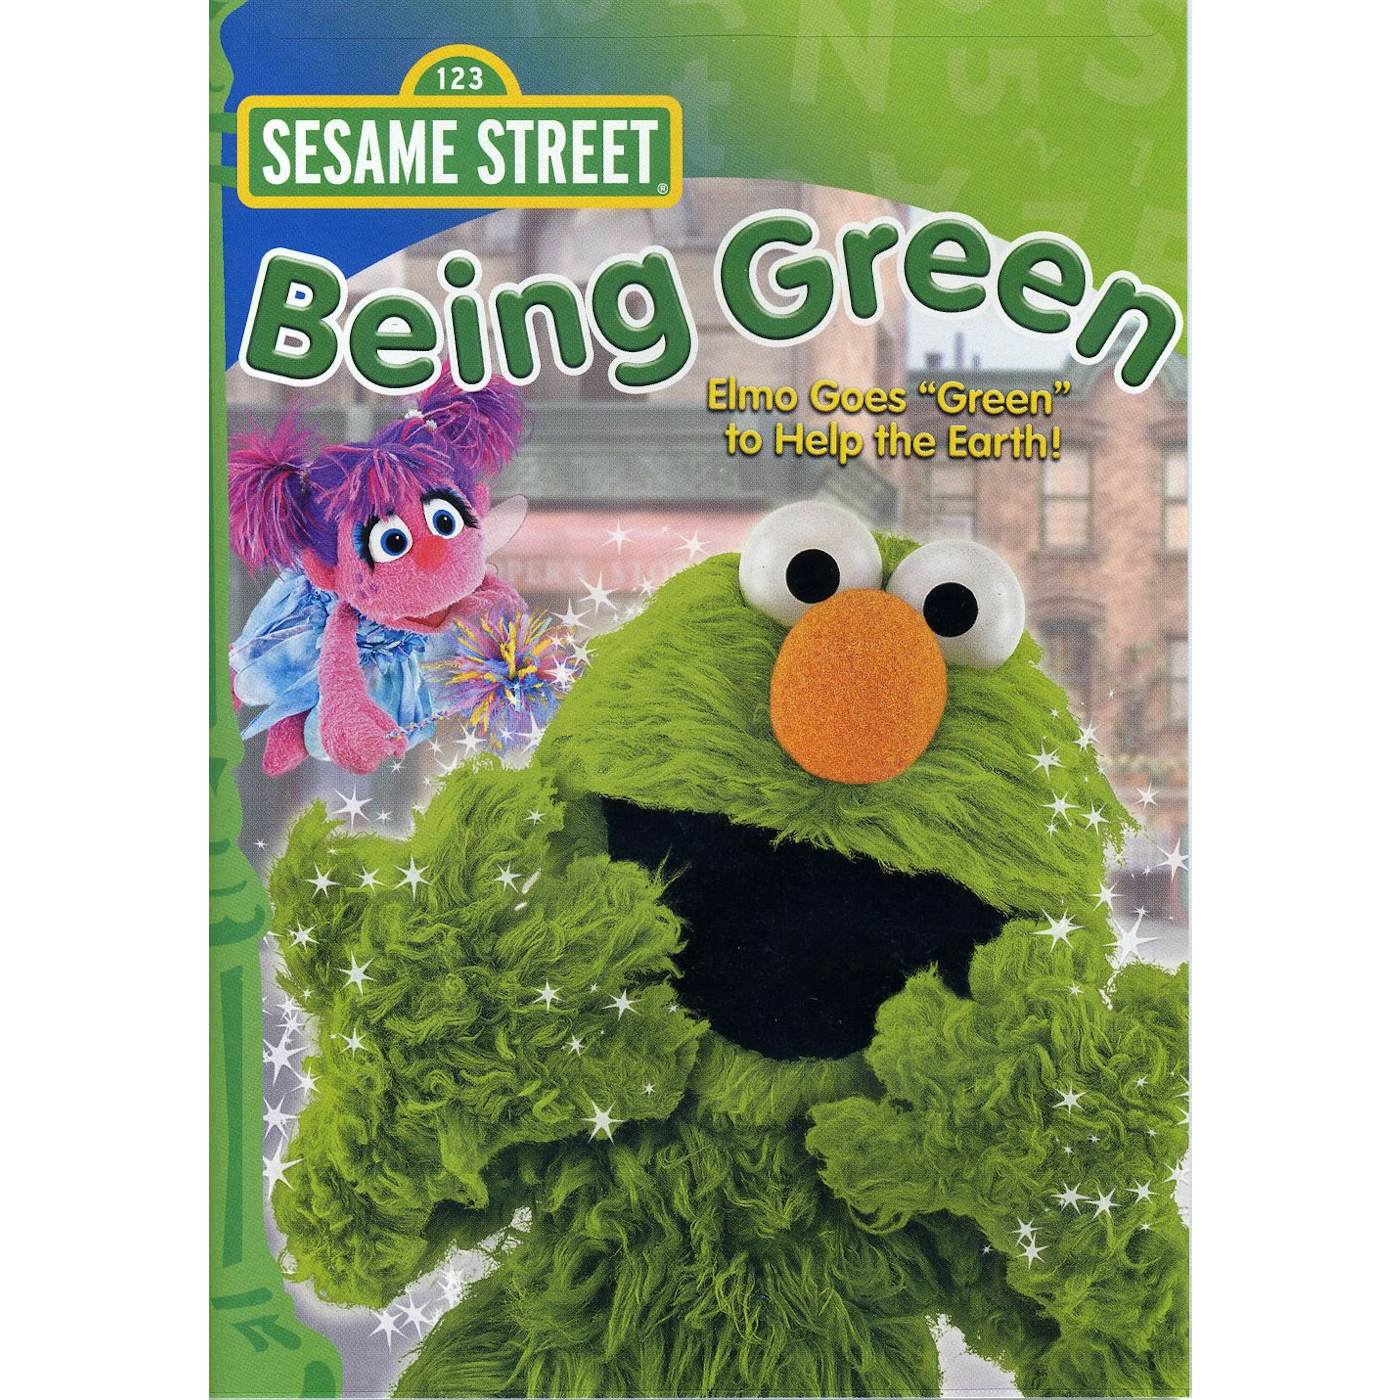 Sesame Street BEING GREEN DVD